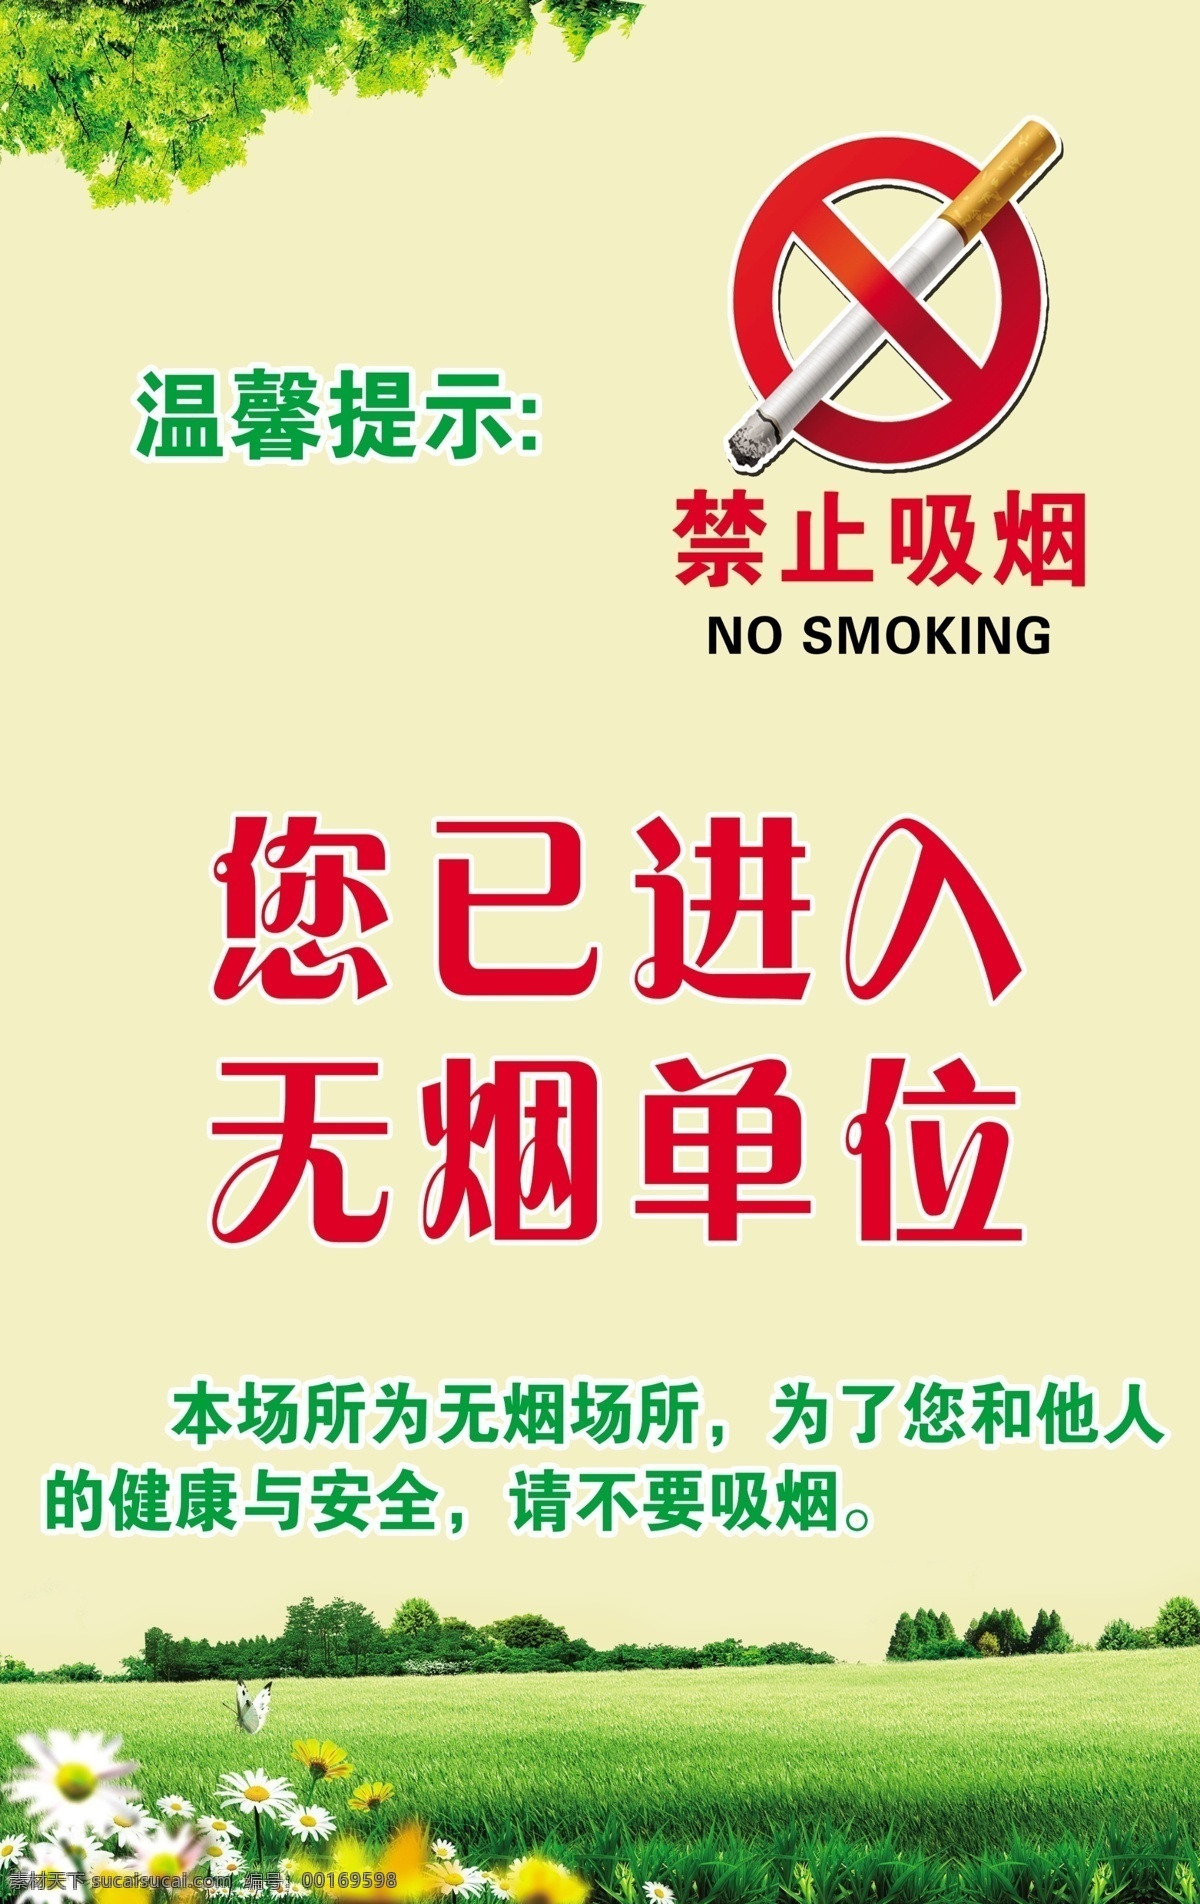 禁止吸烟海报 禁止吸烟 温馨提示 单位禁烟标牌 禁烟 清新背景 草地